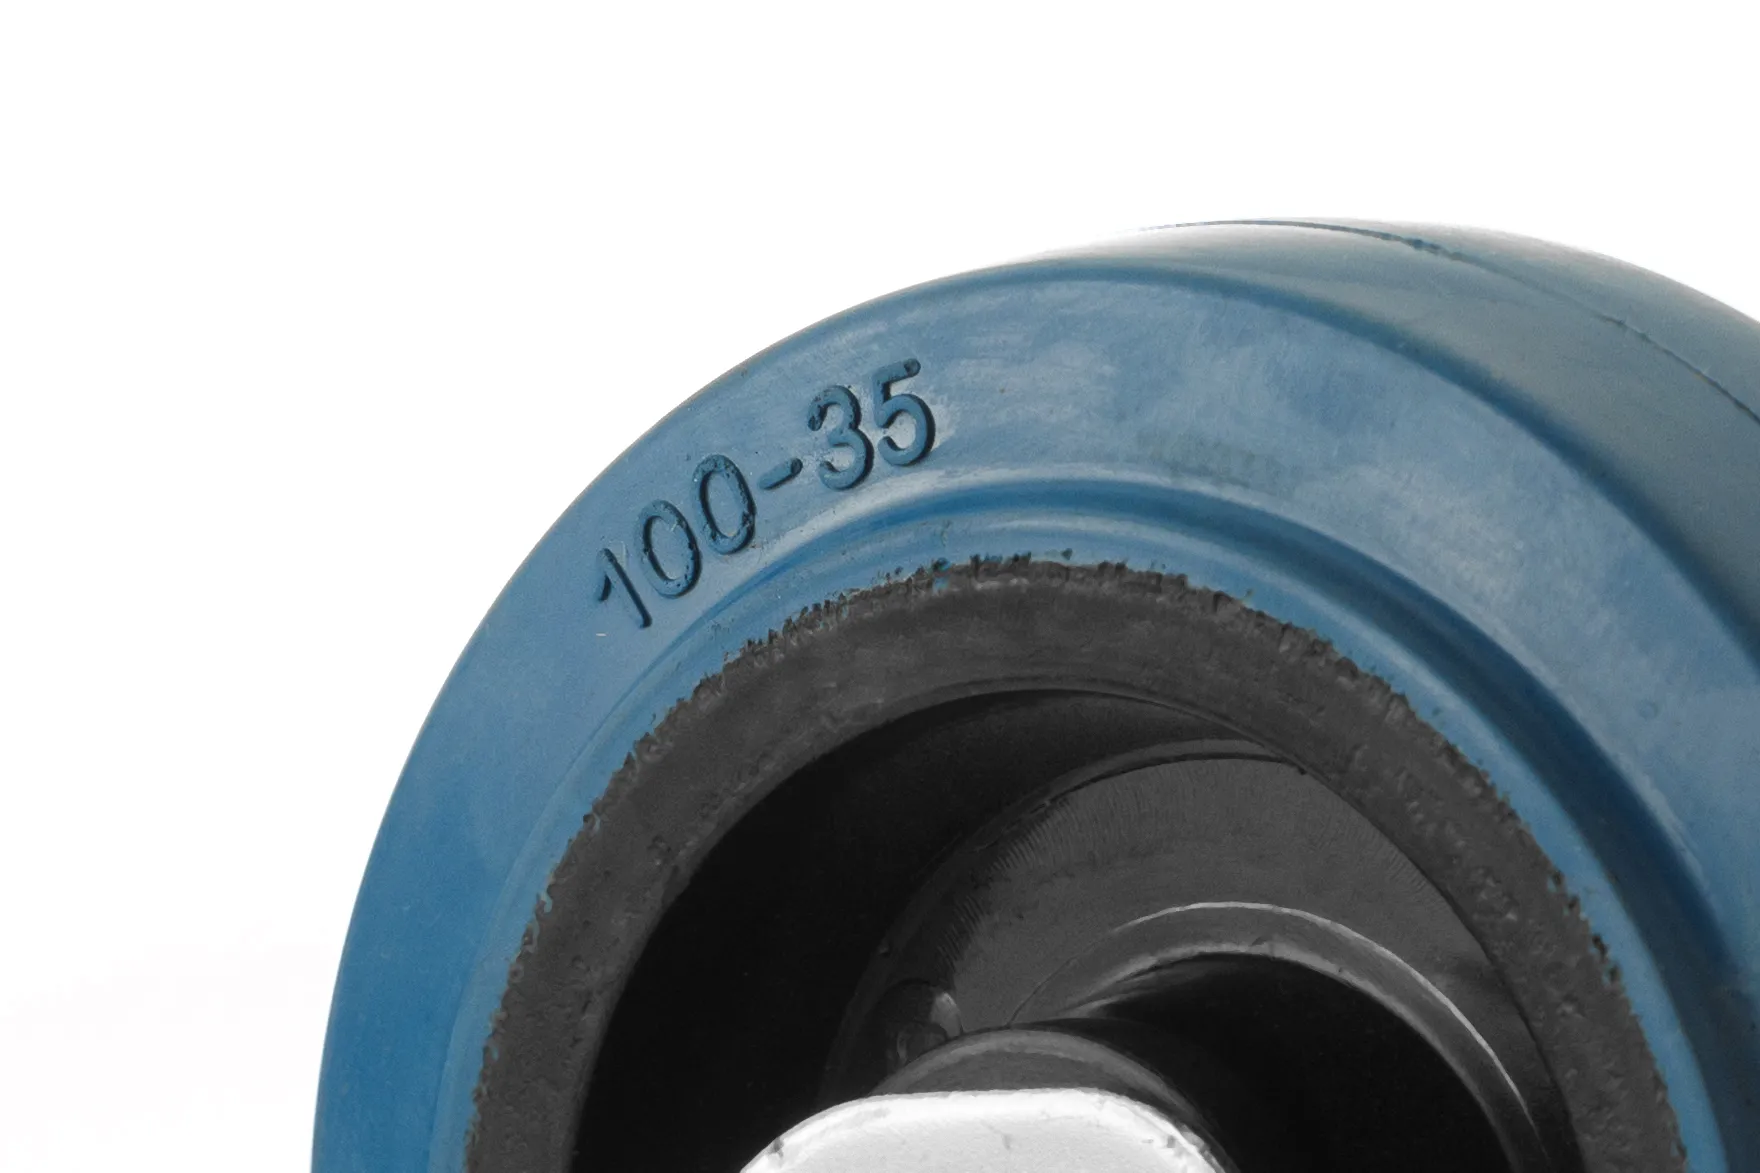 Колесо неповоротное, платформенное крепление, синяя резина, диаметр 100мм - FCL 46